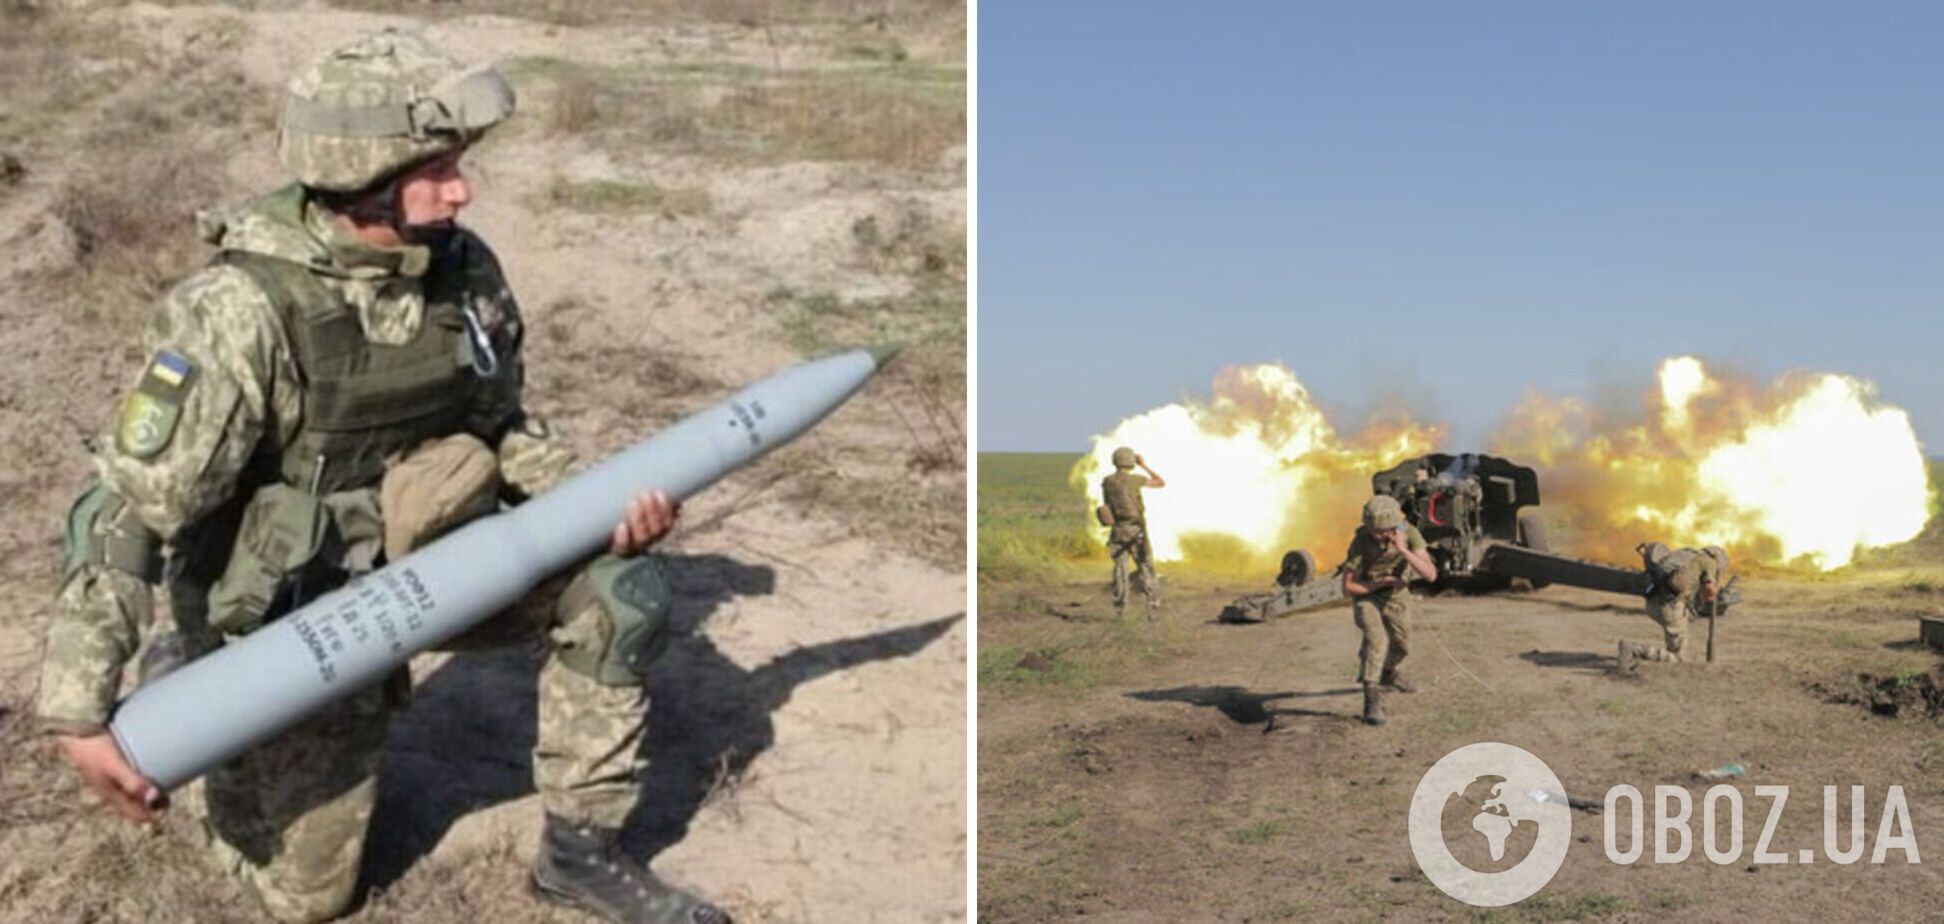 Інтенсивність боїв в Україні зросла, ЗСУ витрачають до 7 тисяч снарядів на день, – Столтенберг 